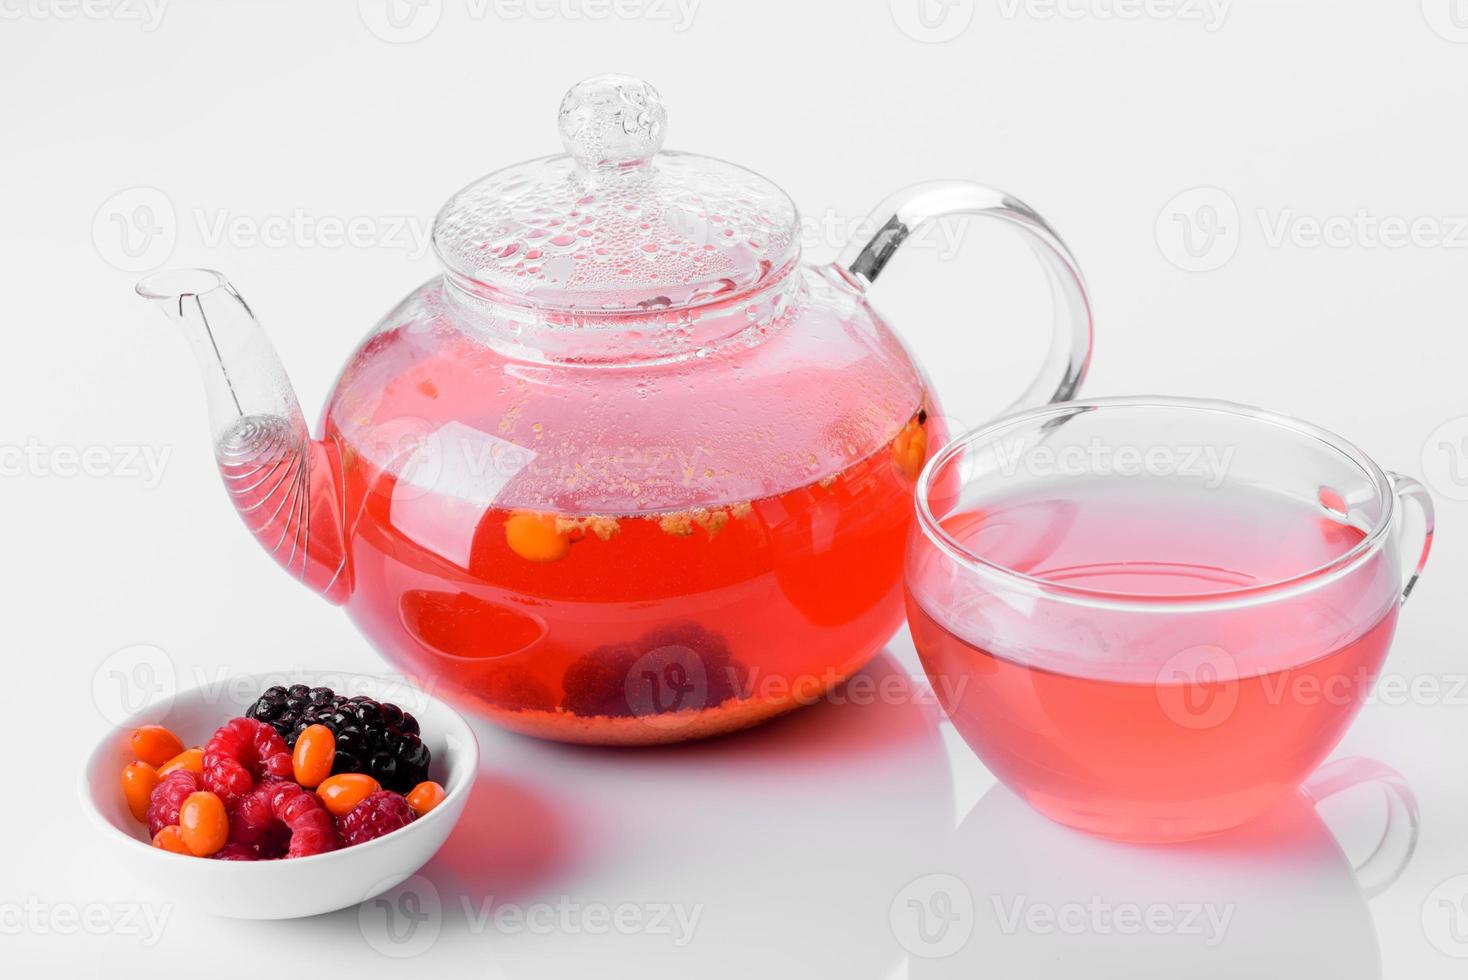 köstlicher Tee aus Beeren und Früchten in einer schönen Glasteekanne auf weißem Hintergrund mit Reflexion foto